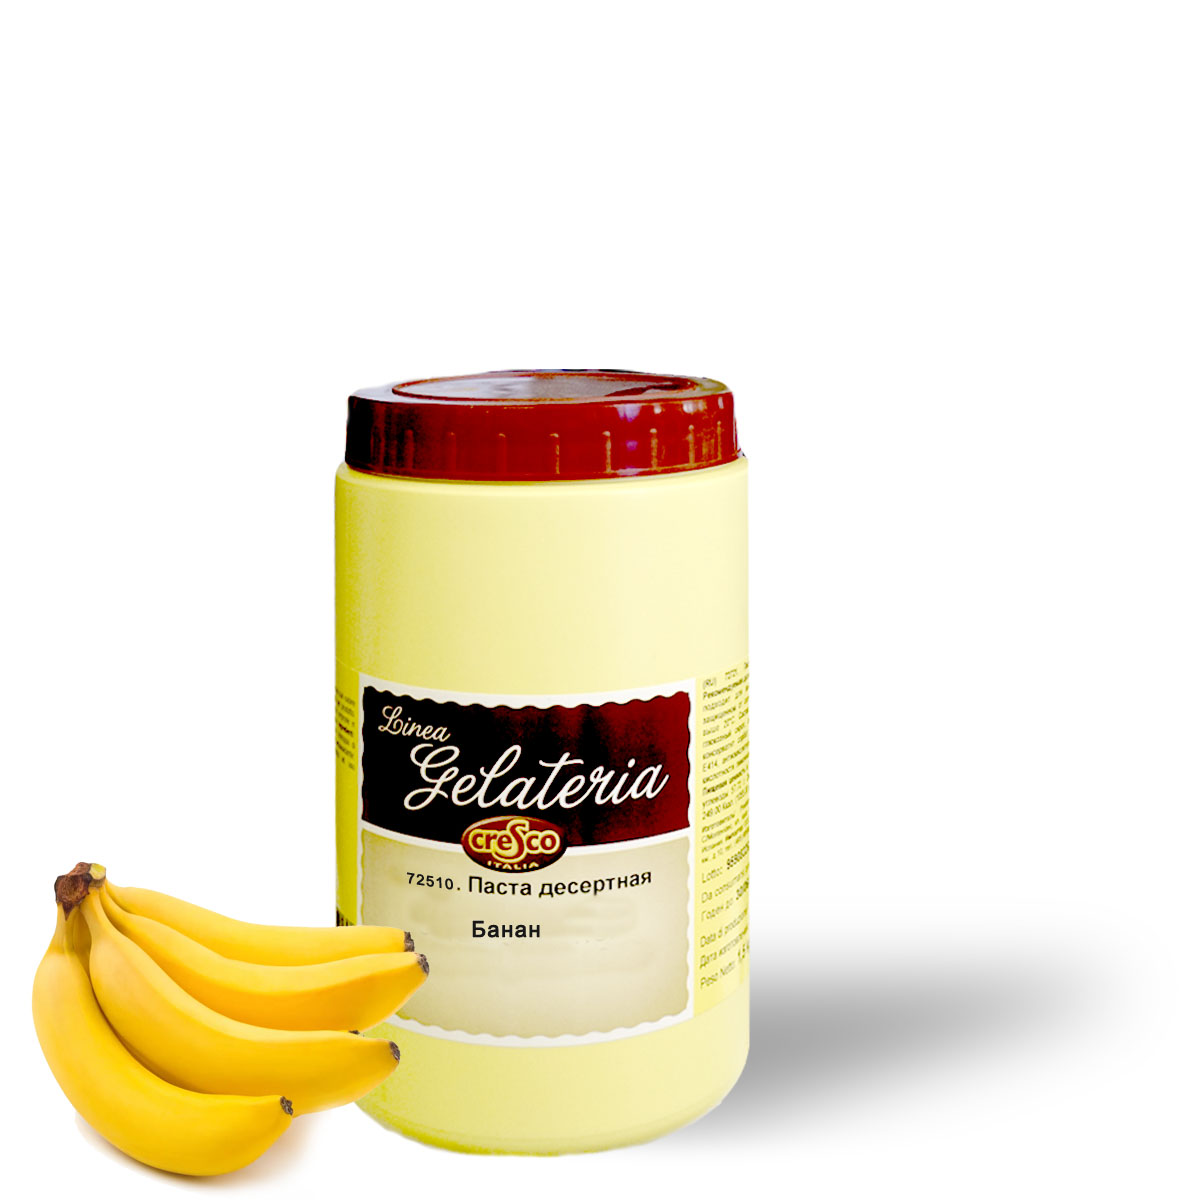 купить ДП Банан 1,5 кг/Италия/ 72510